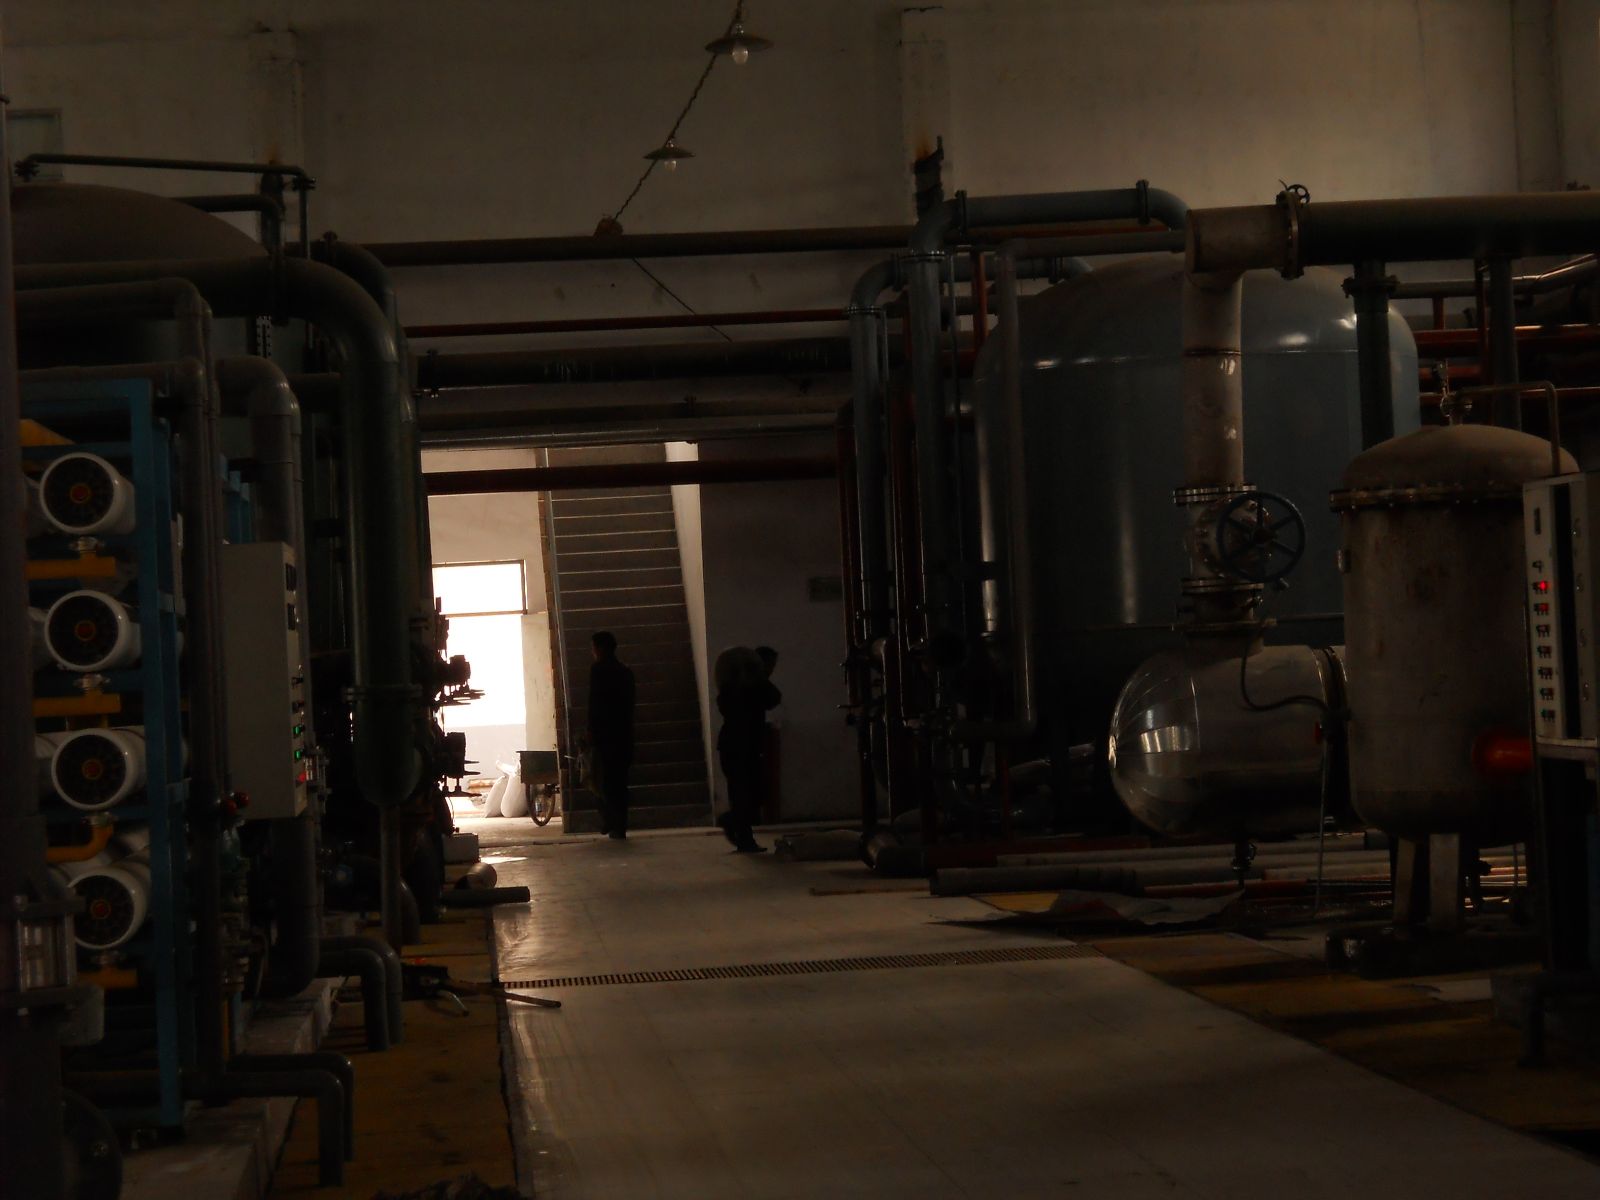 甘肃兰州某电厂锅炉补给水海绵铁滤料安装现场